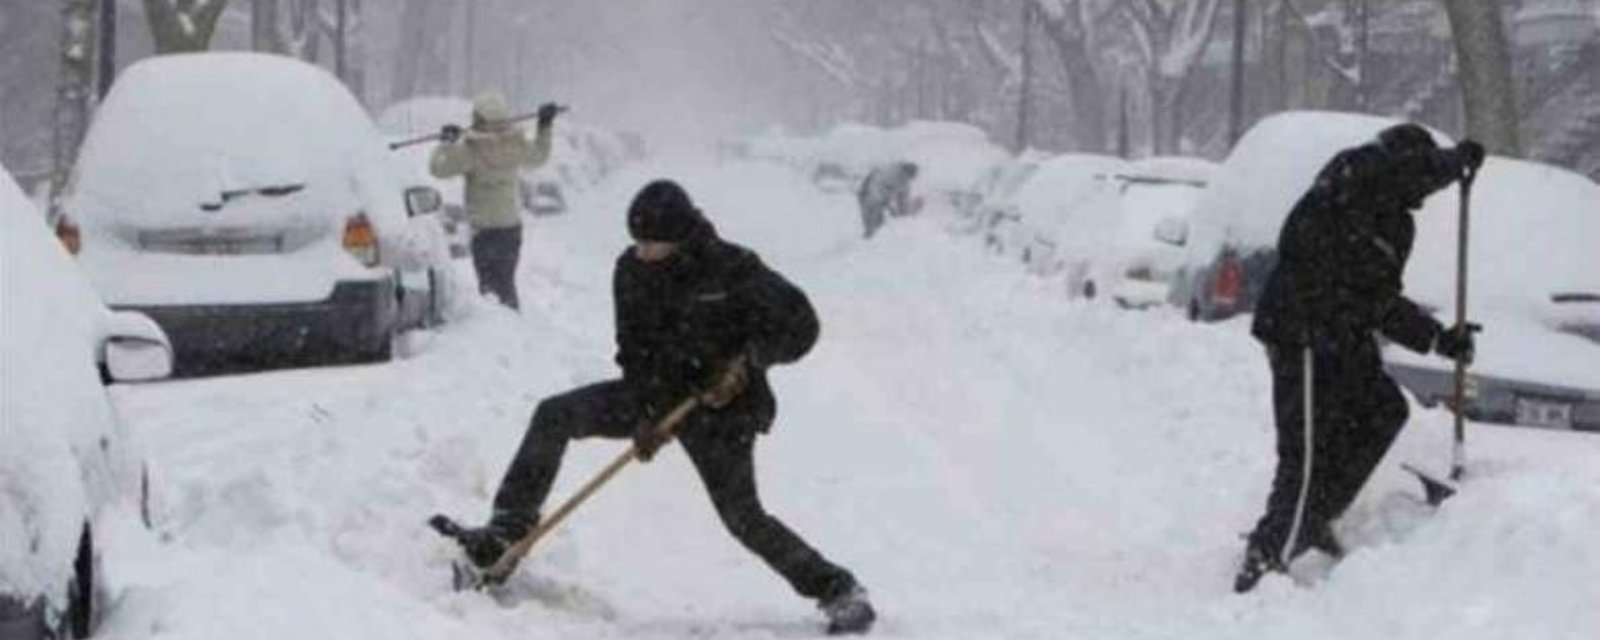 Excellente nouvelle pour les Québécois qui sont tannés de l'hiver...